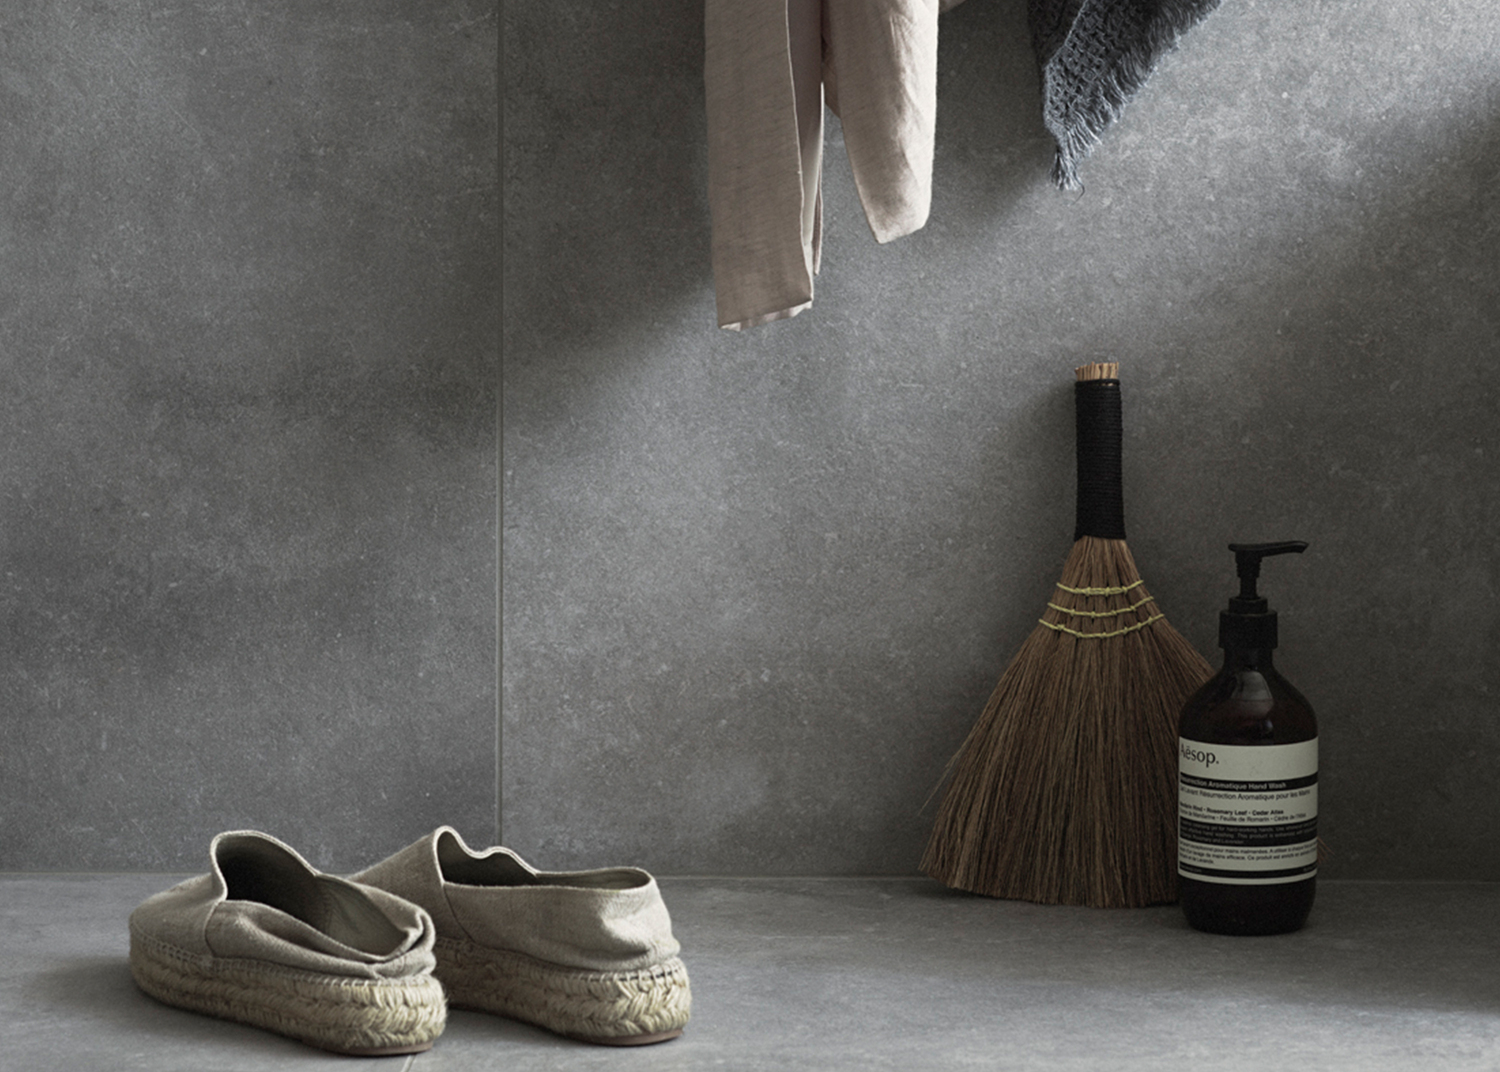 Miljöbild på grå granitkeramik i ett badrum. Tofflor och detaljer.